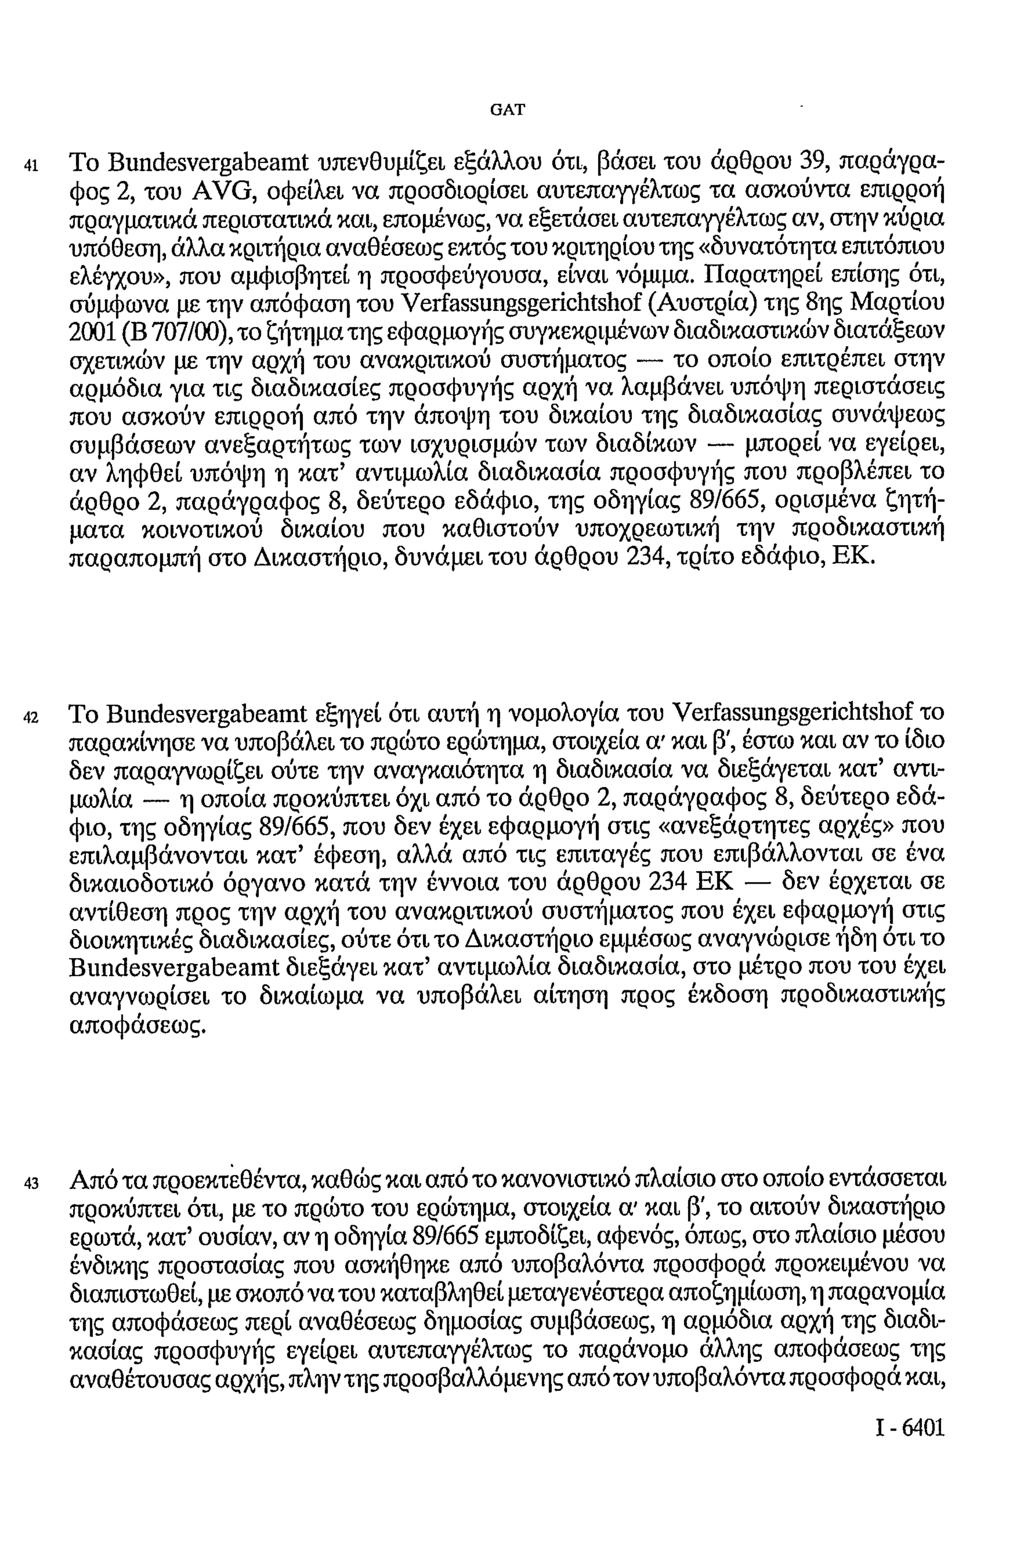 41 Το Bundesvergabeamt υπενθυμίζει εξάλλου ότι, βάσει του άρθρου 39, παράγραφος 2, του AVG, οφείλει να προσδιορίσει αυτεπαγγέλτως τα ασκούντα επιρροή πραγματικά περιστατικά και, επομένως, να εξετάσει